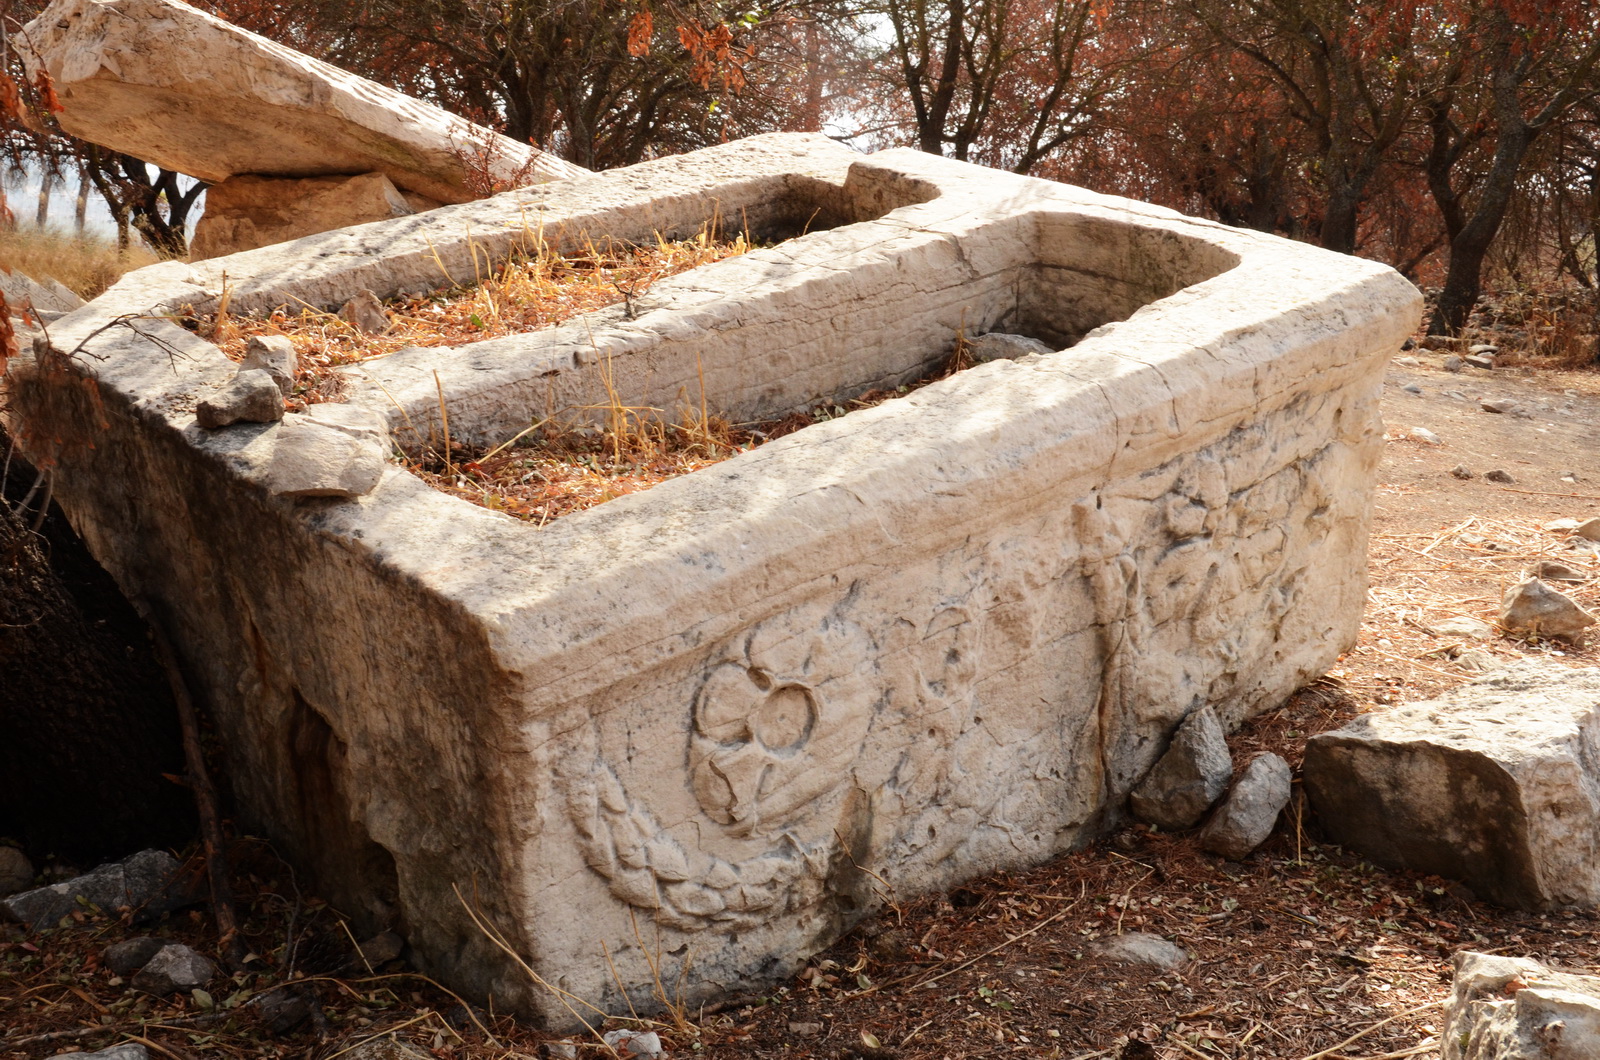 תל קדש - סרקופגי ענק (ארונות קבורה)  לבודדים ולזוגות ברחבי האתר